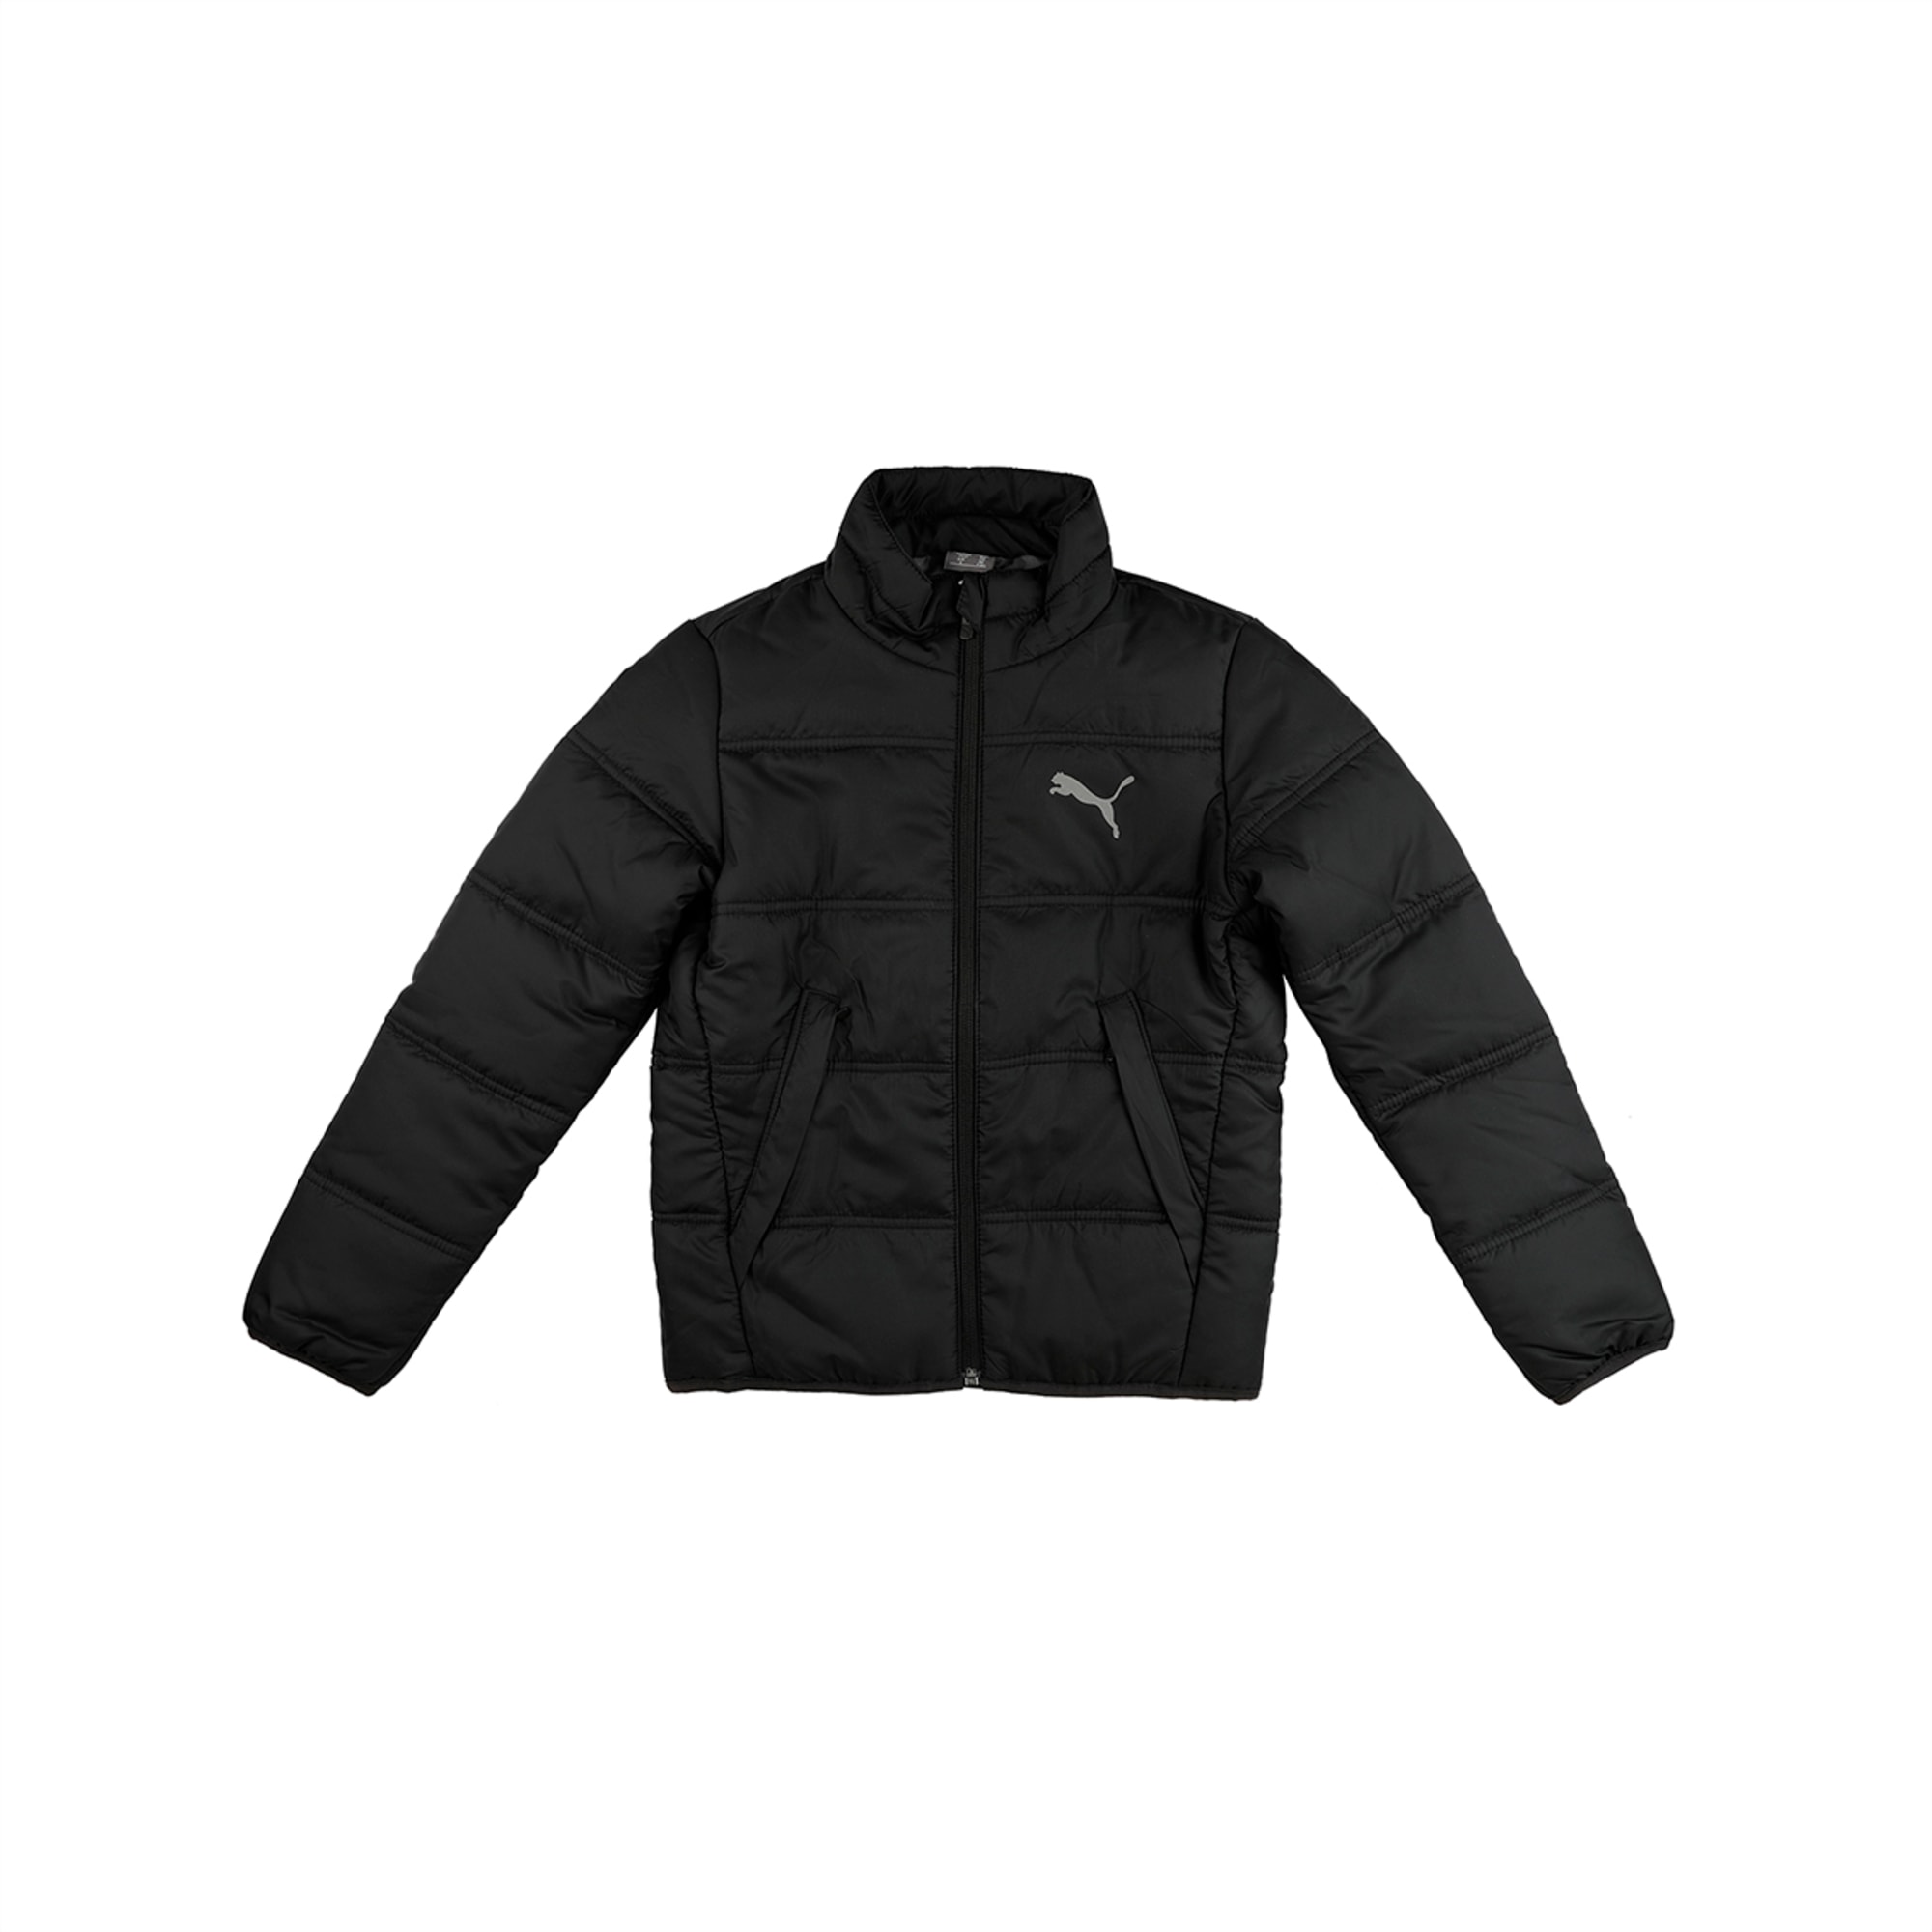 puma black padded jacket